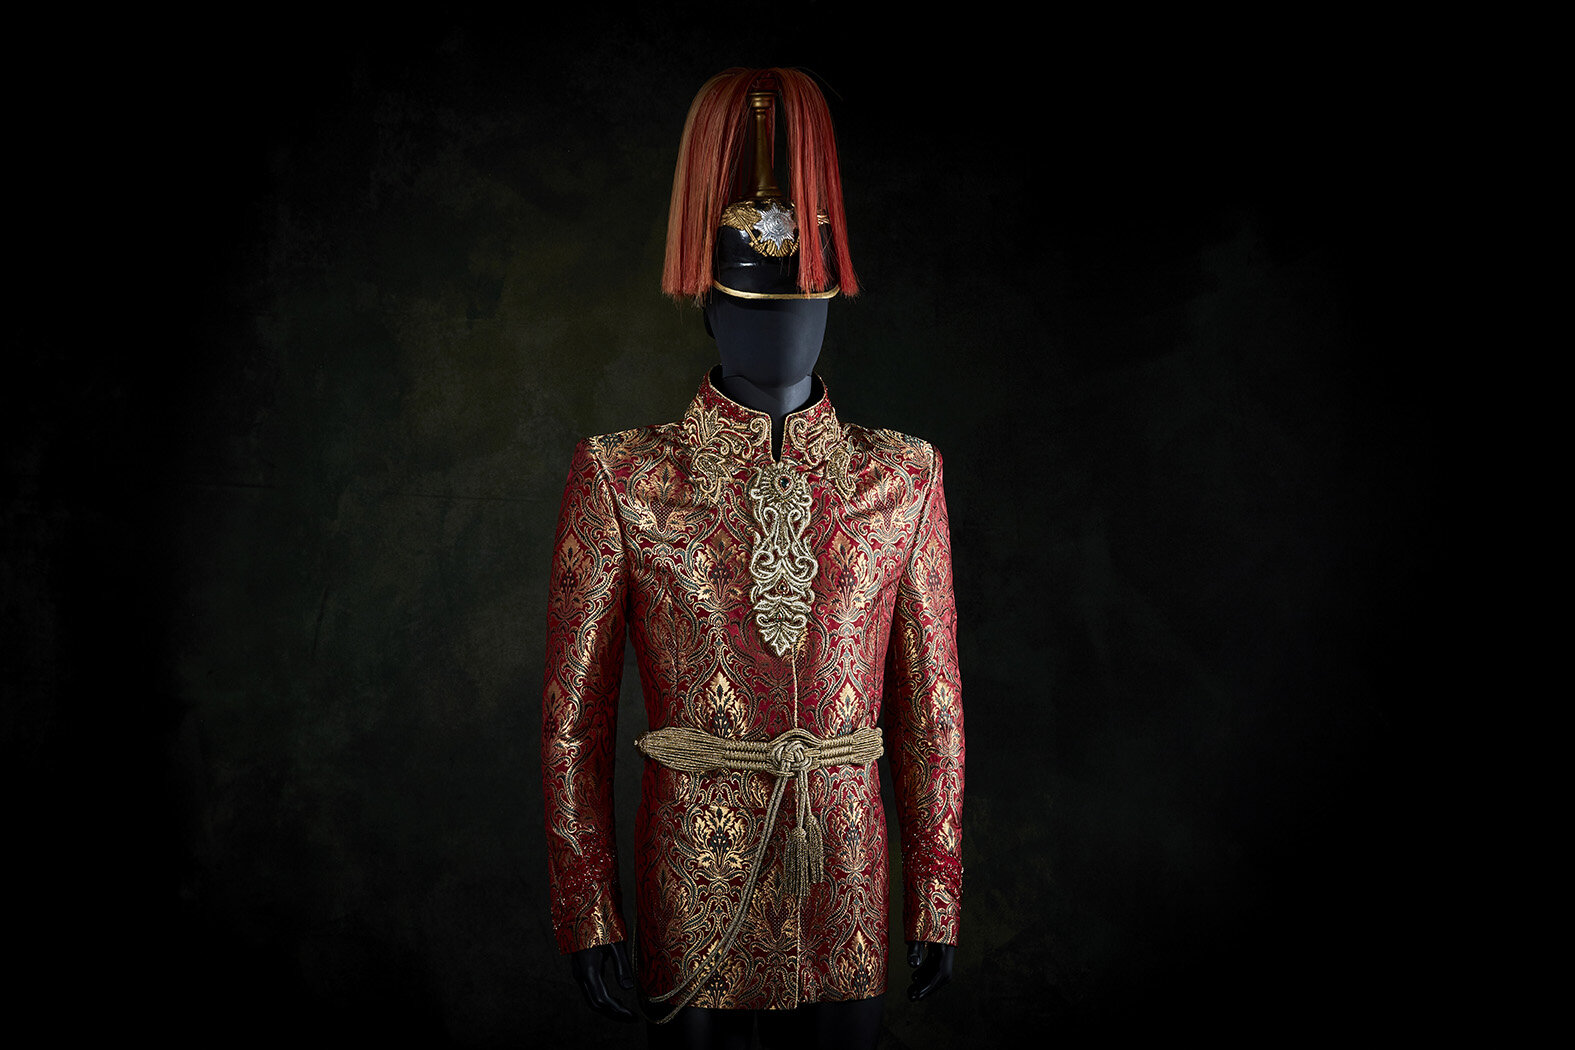 Uniform in historischem Military Look (Kopie)